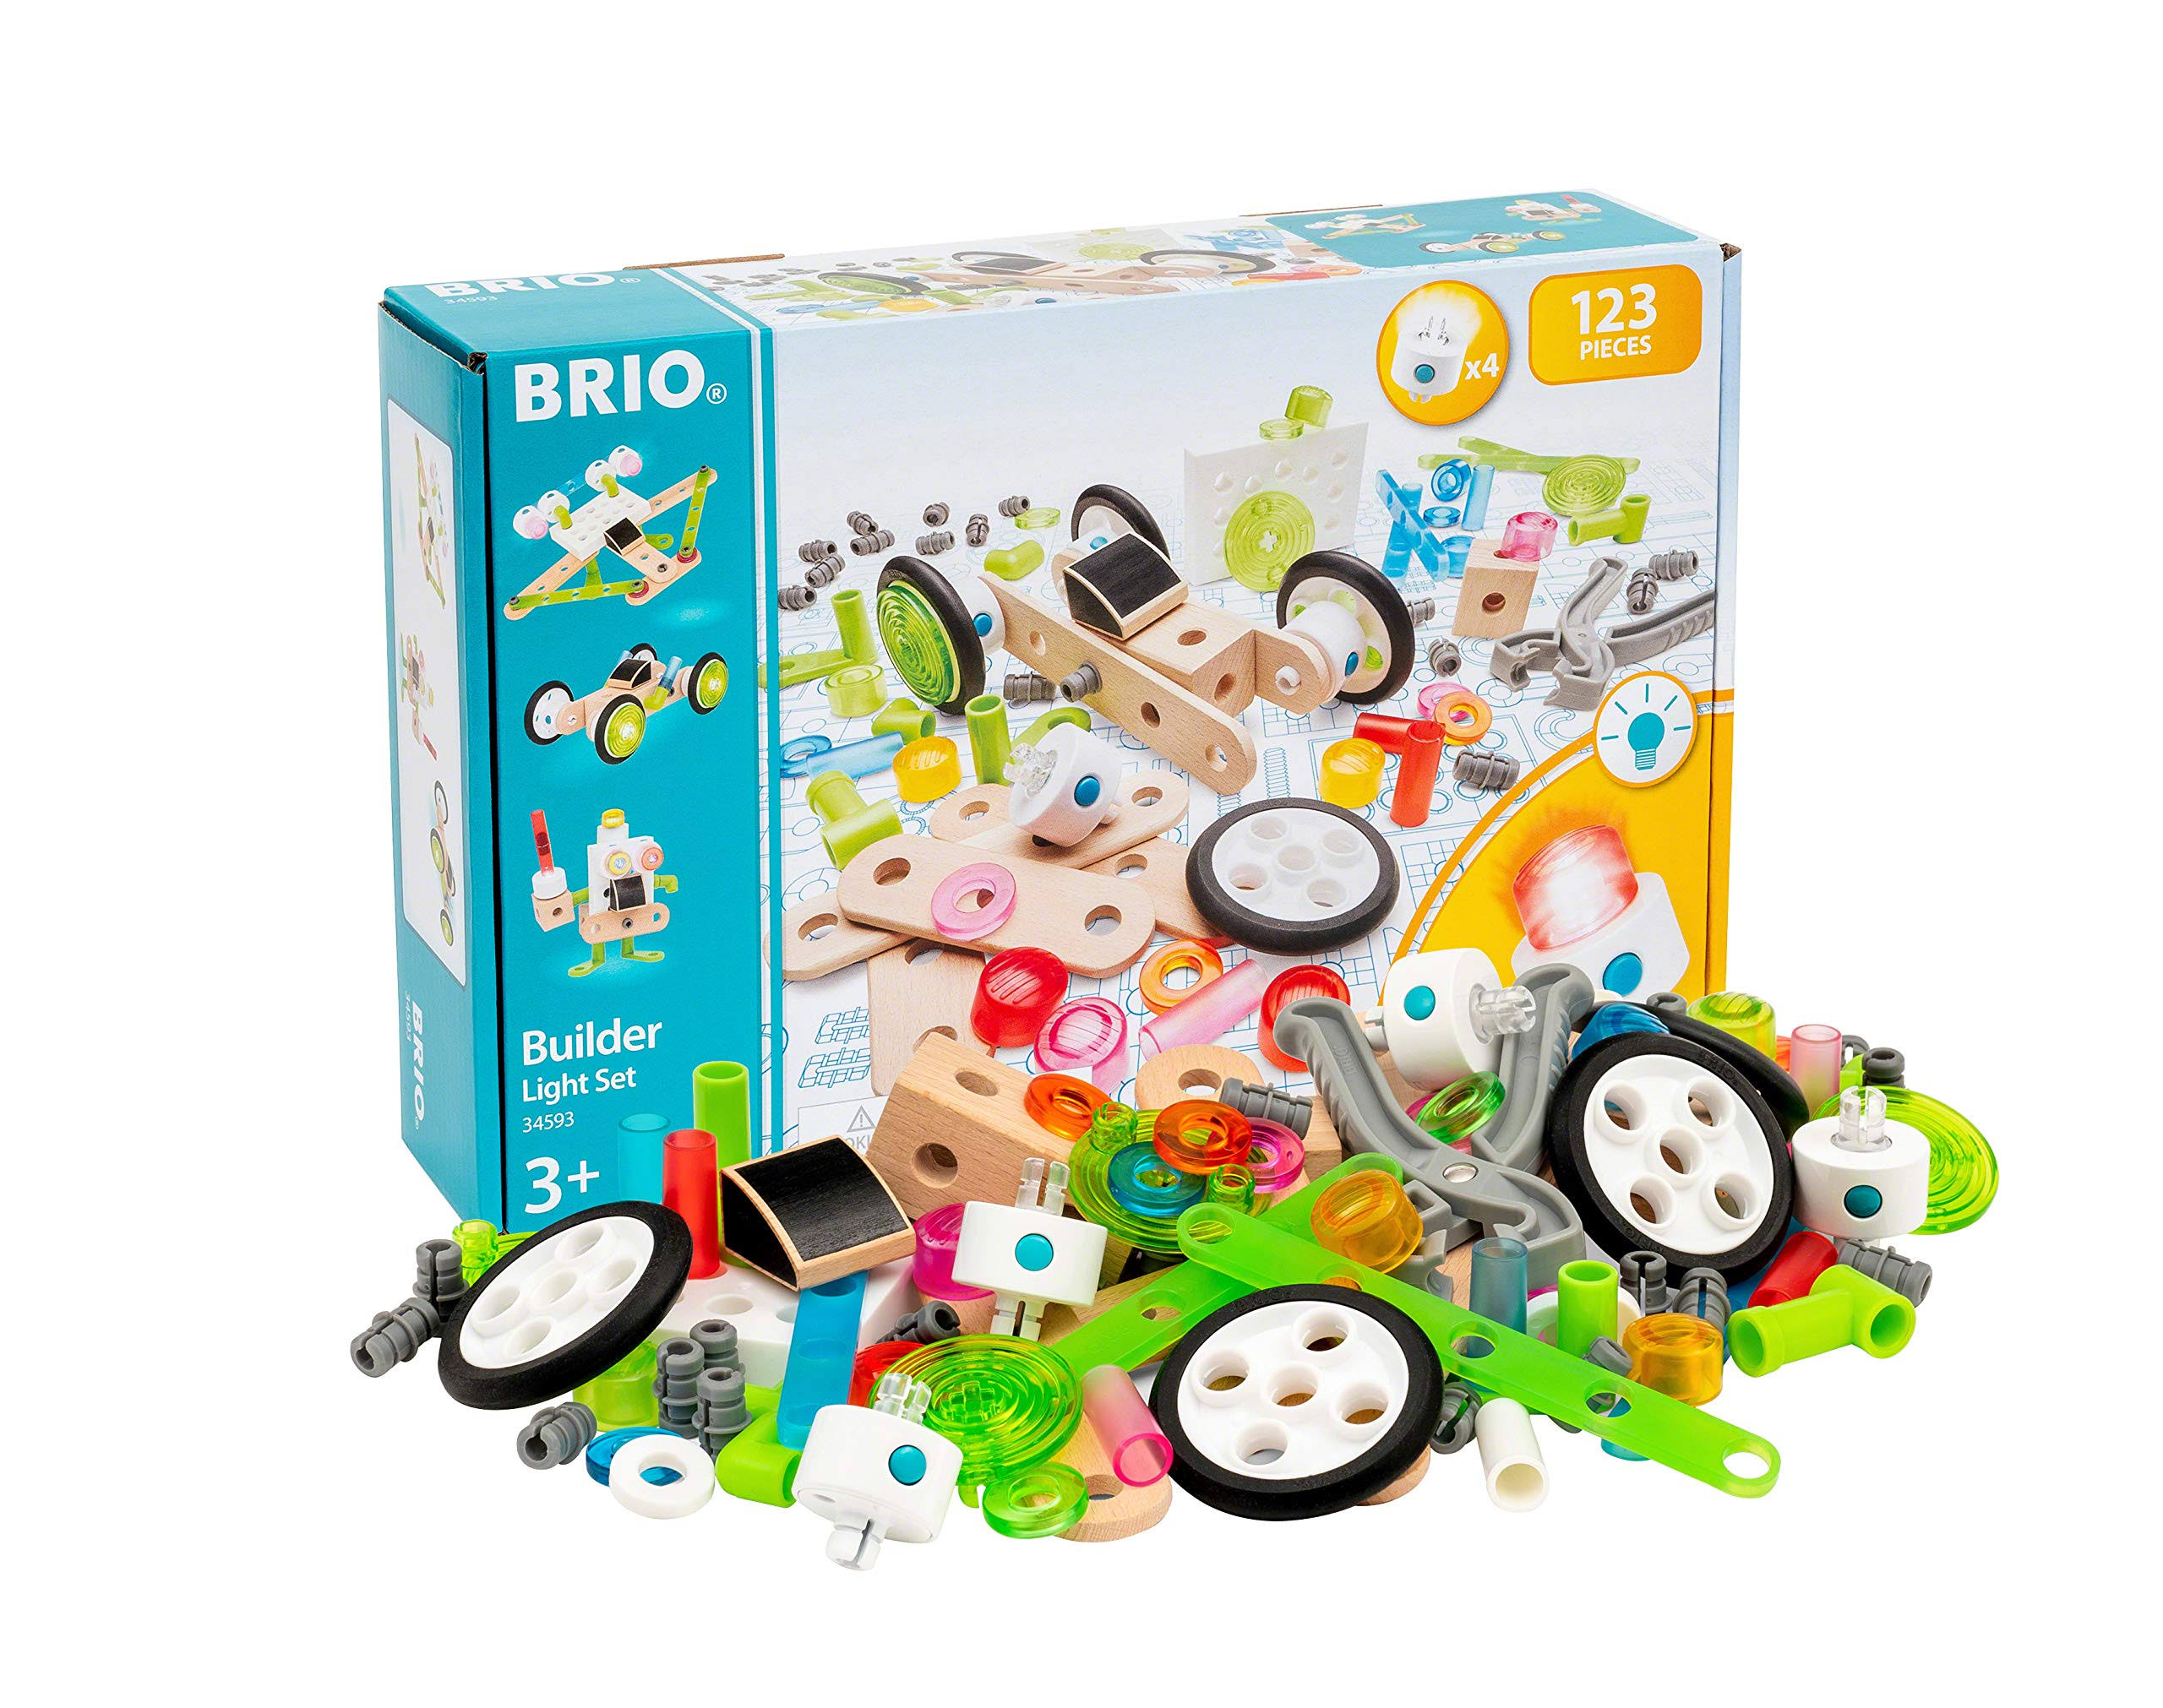 BRIO - Builder Light Set